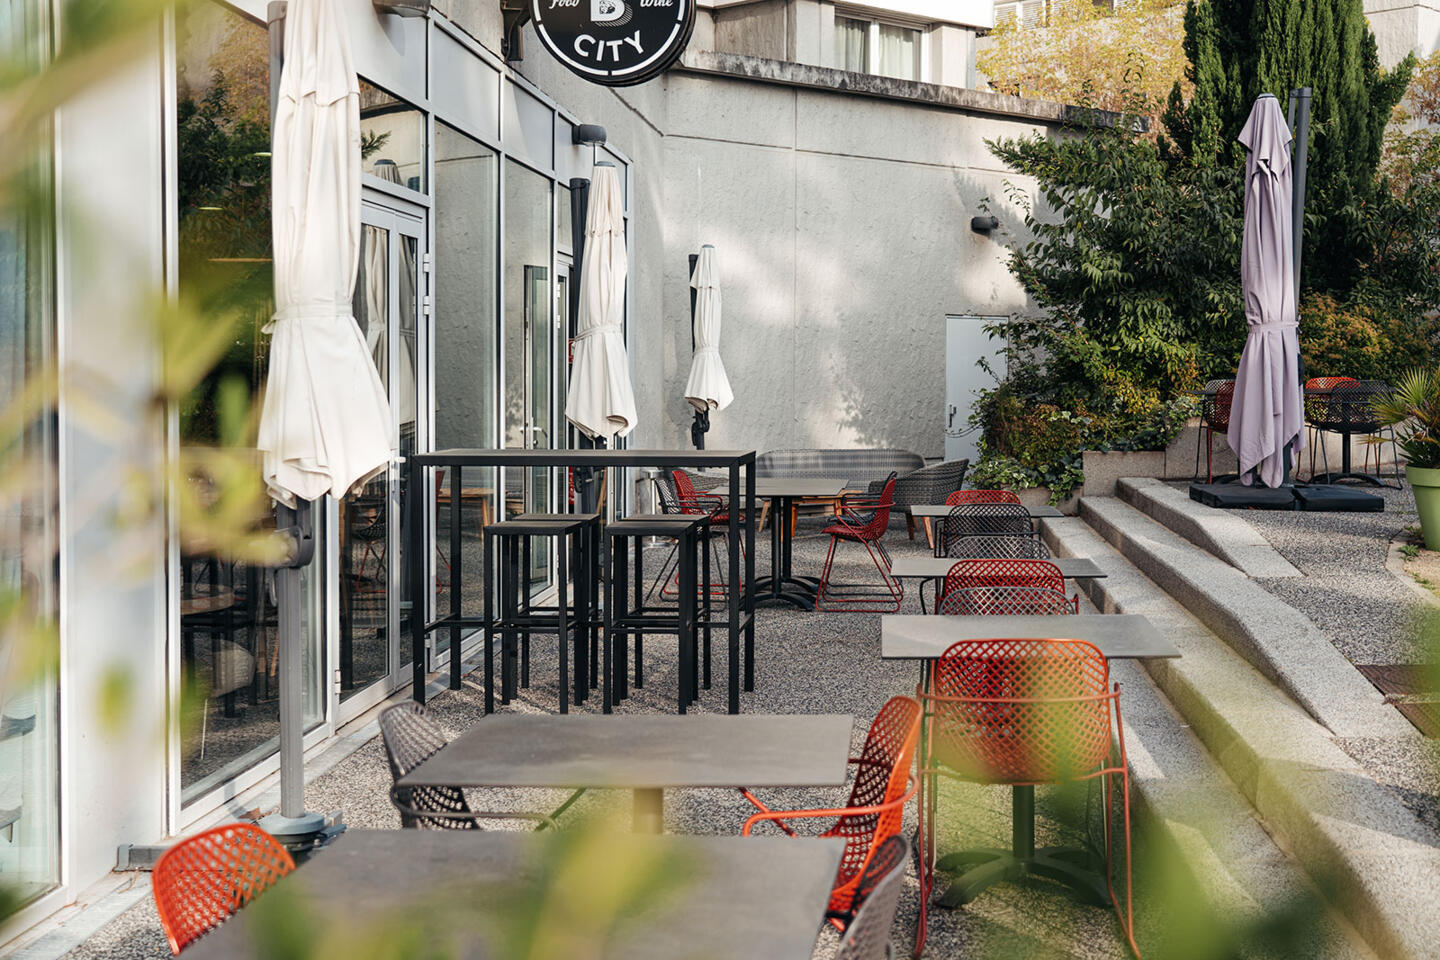 Ruhige Terrasse des Restaurants Bistrot City in Lyon Cité Internationale mit modernen schwarzen Metalltischen und Stühlen mit orangefarbenen Sitzen, geschlossenen Sonnenschirmen, in einem städtischen Umfeld mit grüner Bepflanzung, das zur Entspannung einlädt.